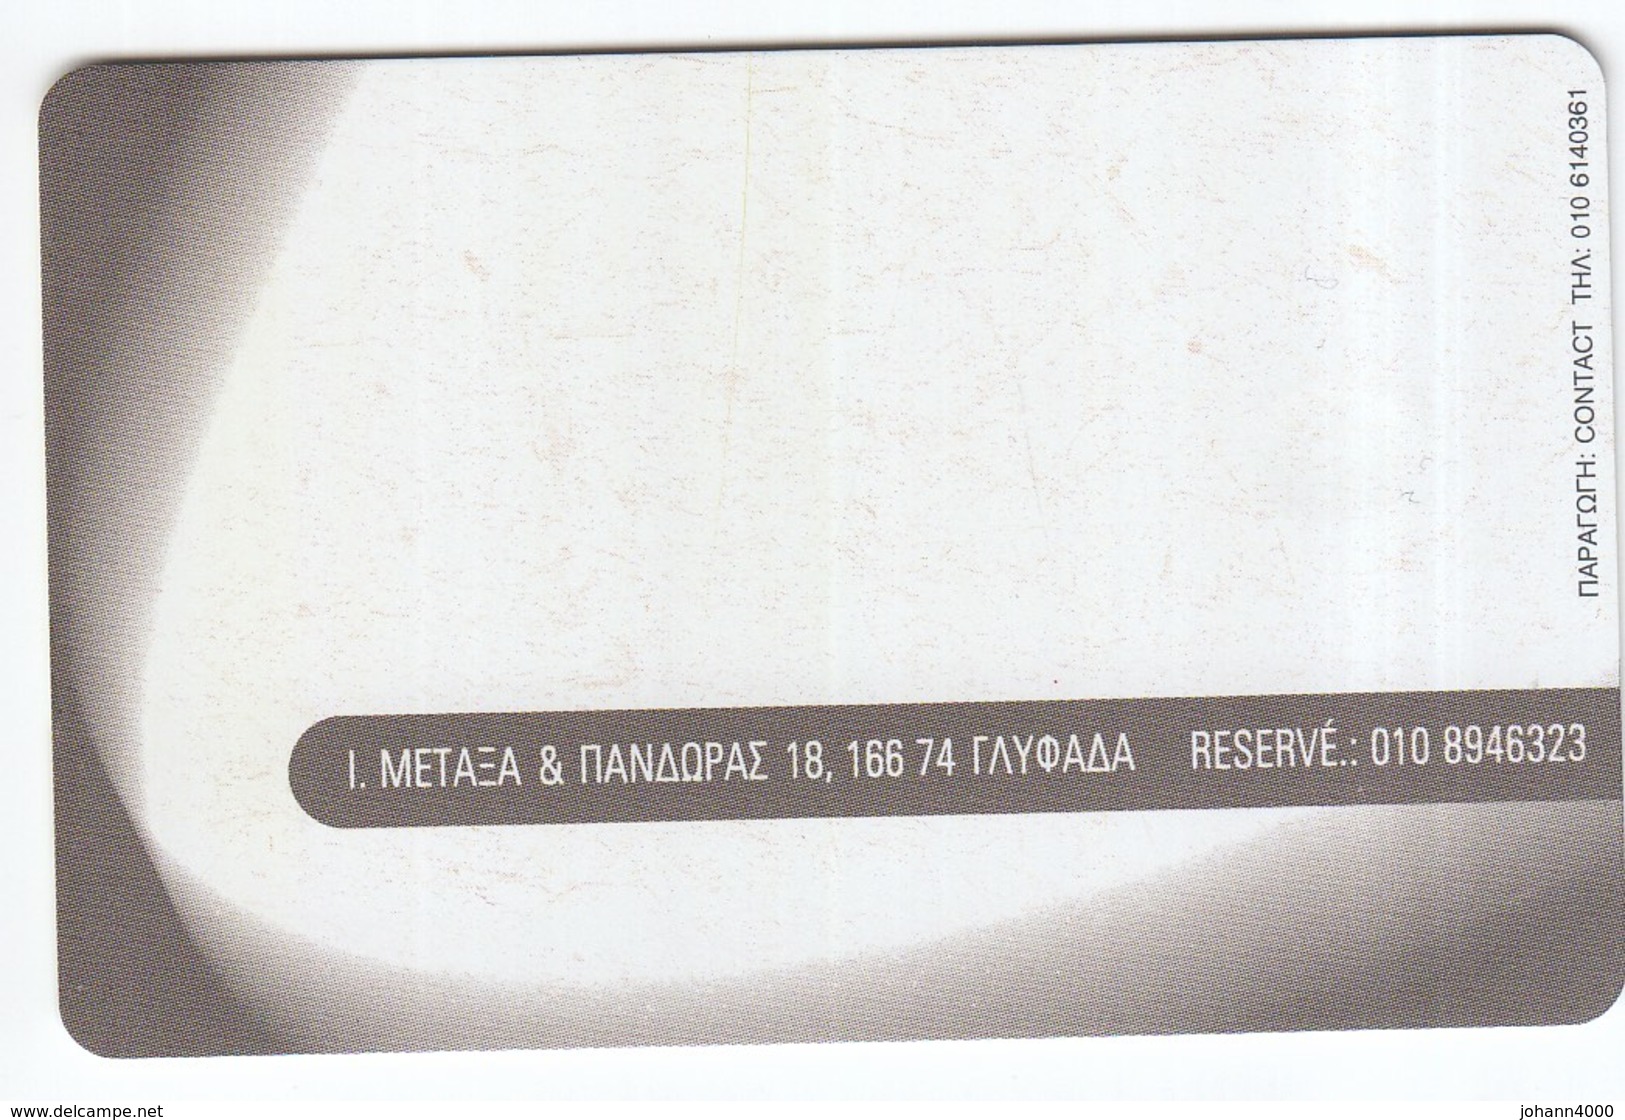 Telefonkarte Griechenland  Chip OTE   Nr. 1548   1242    Aufl. 45.000 St. Geb. - Griekenland